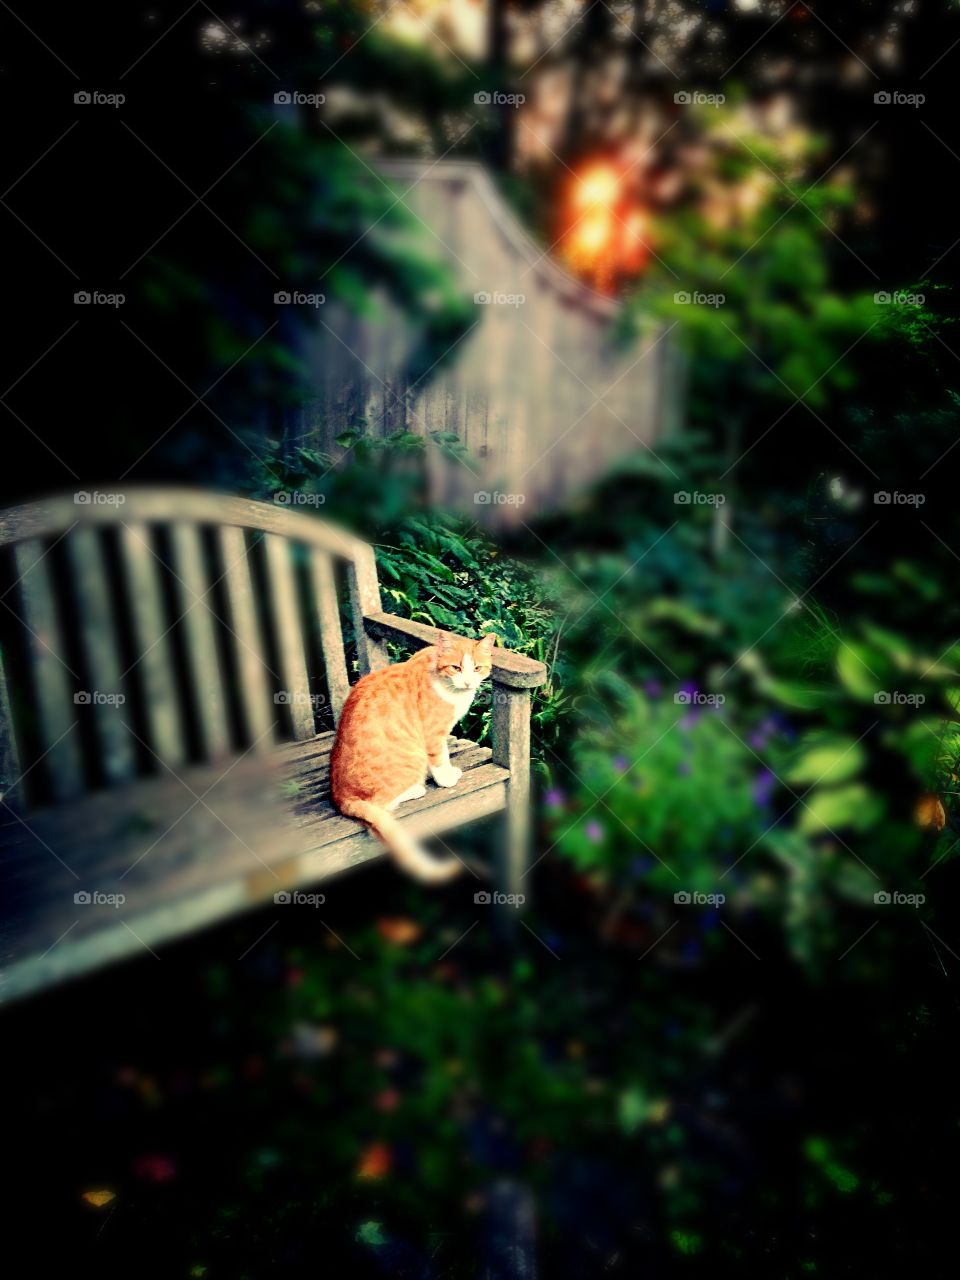 Archie the cat on bench. Archie the cat on bench in garden